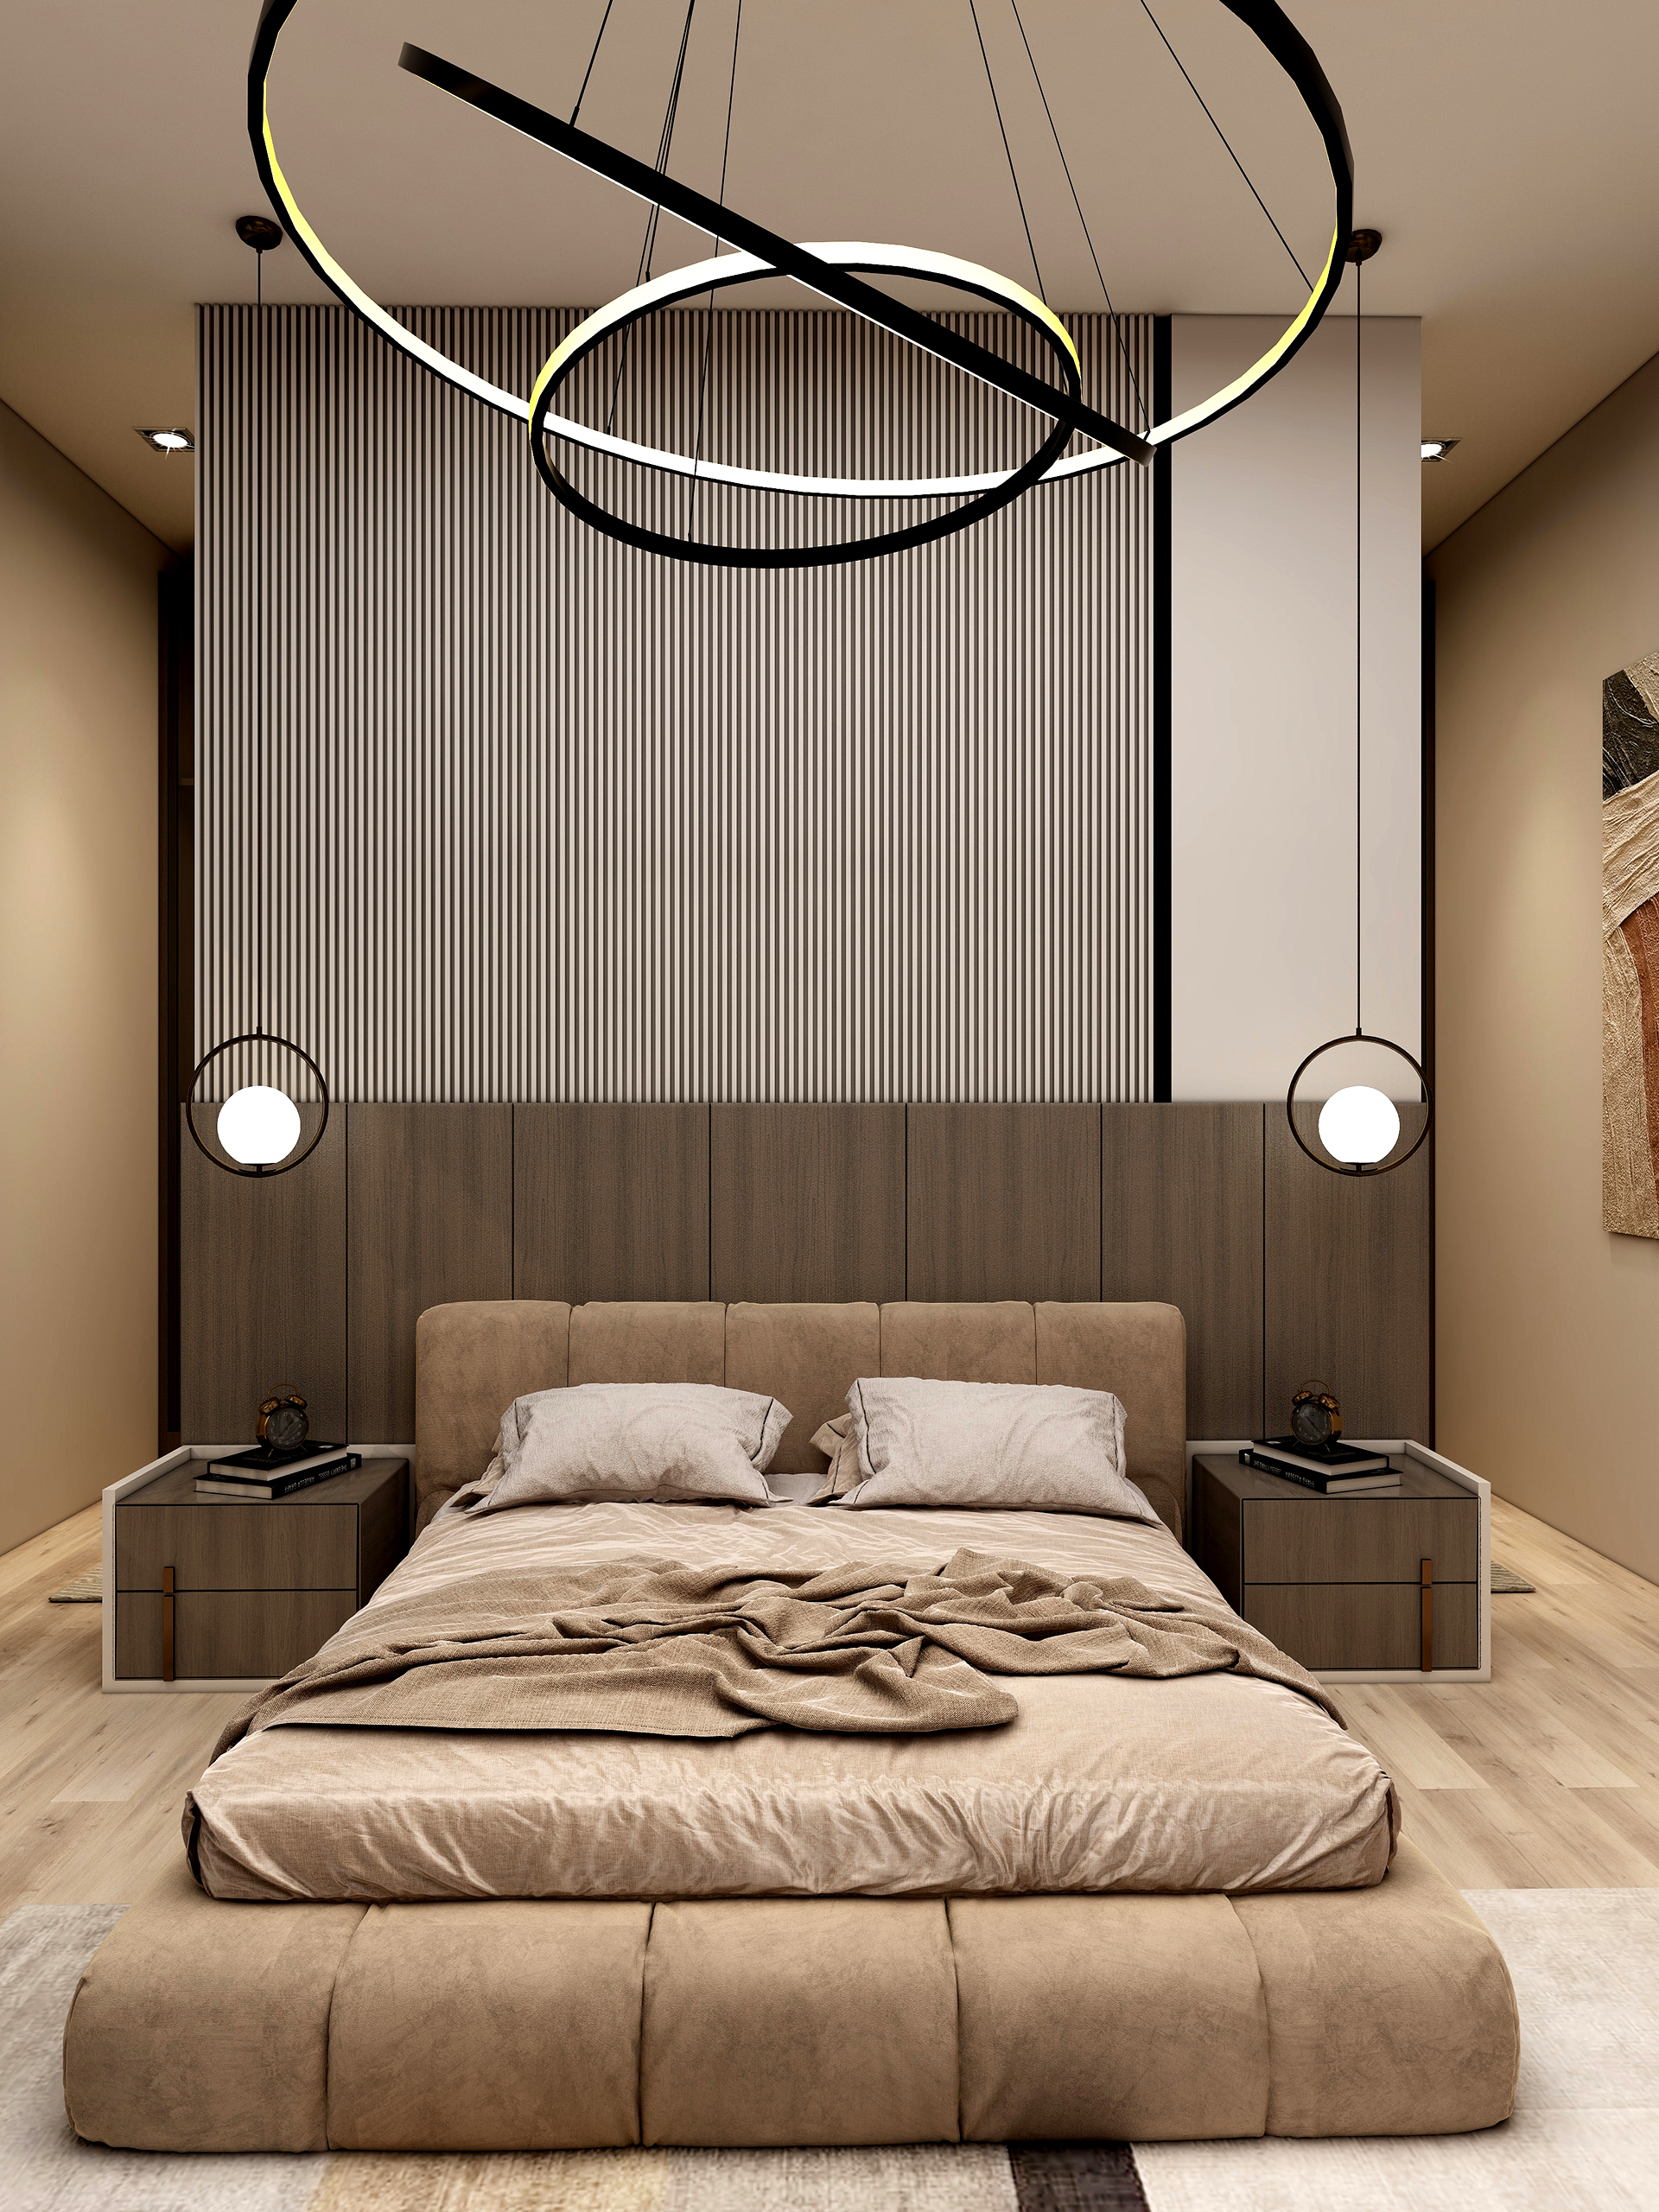 Những ý tưởng thiết kế phòng ngủ không cần giường độc đáo ít ai biết 4